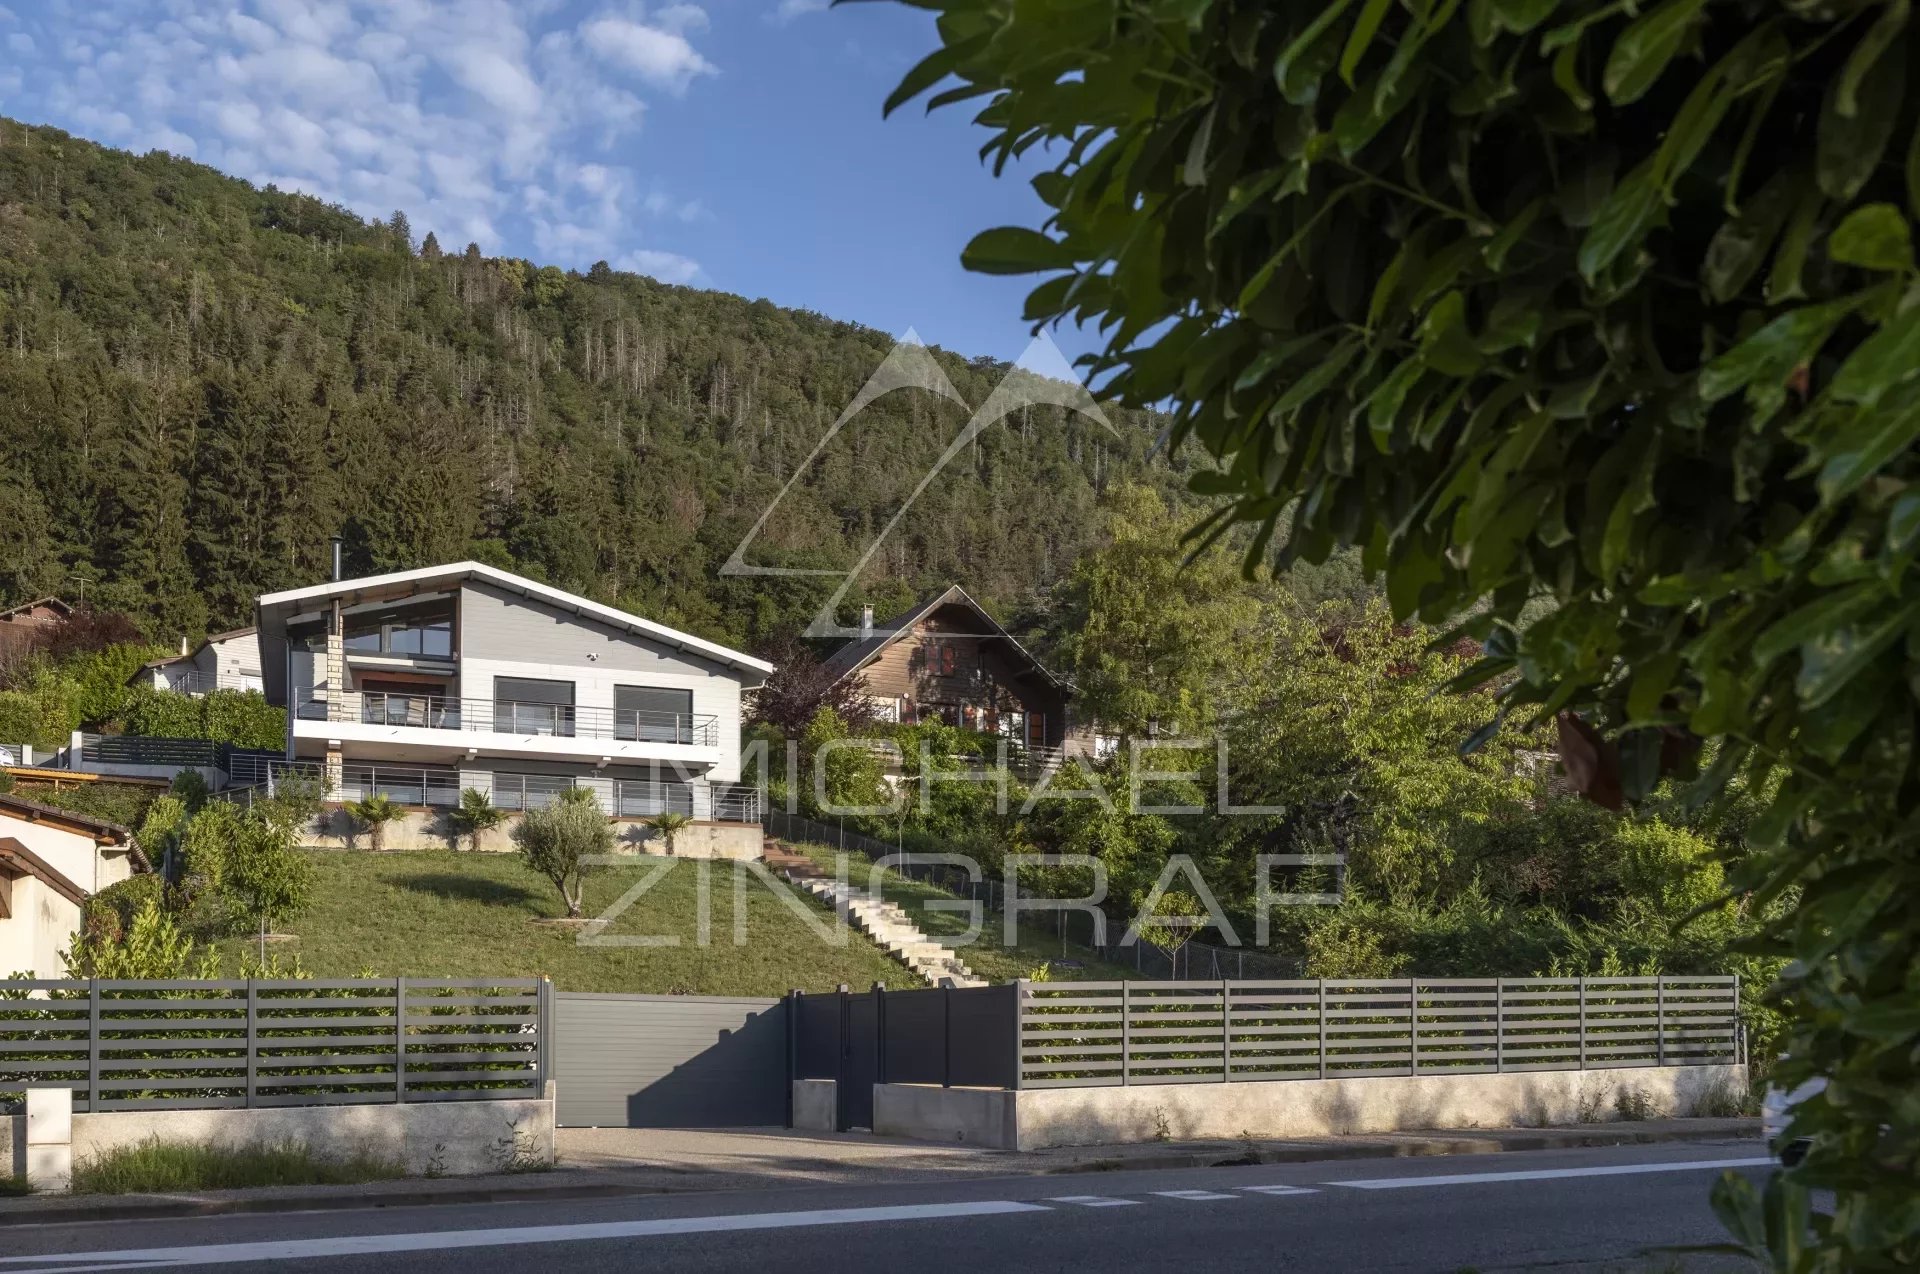 Moderne Villa mit Panoramablick auf den See von Annecy